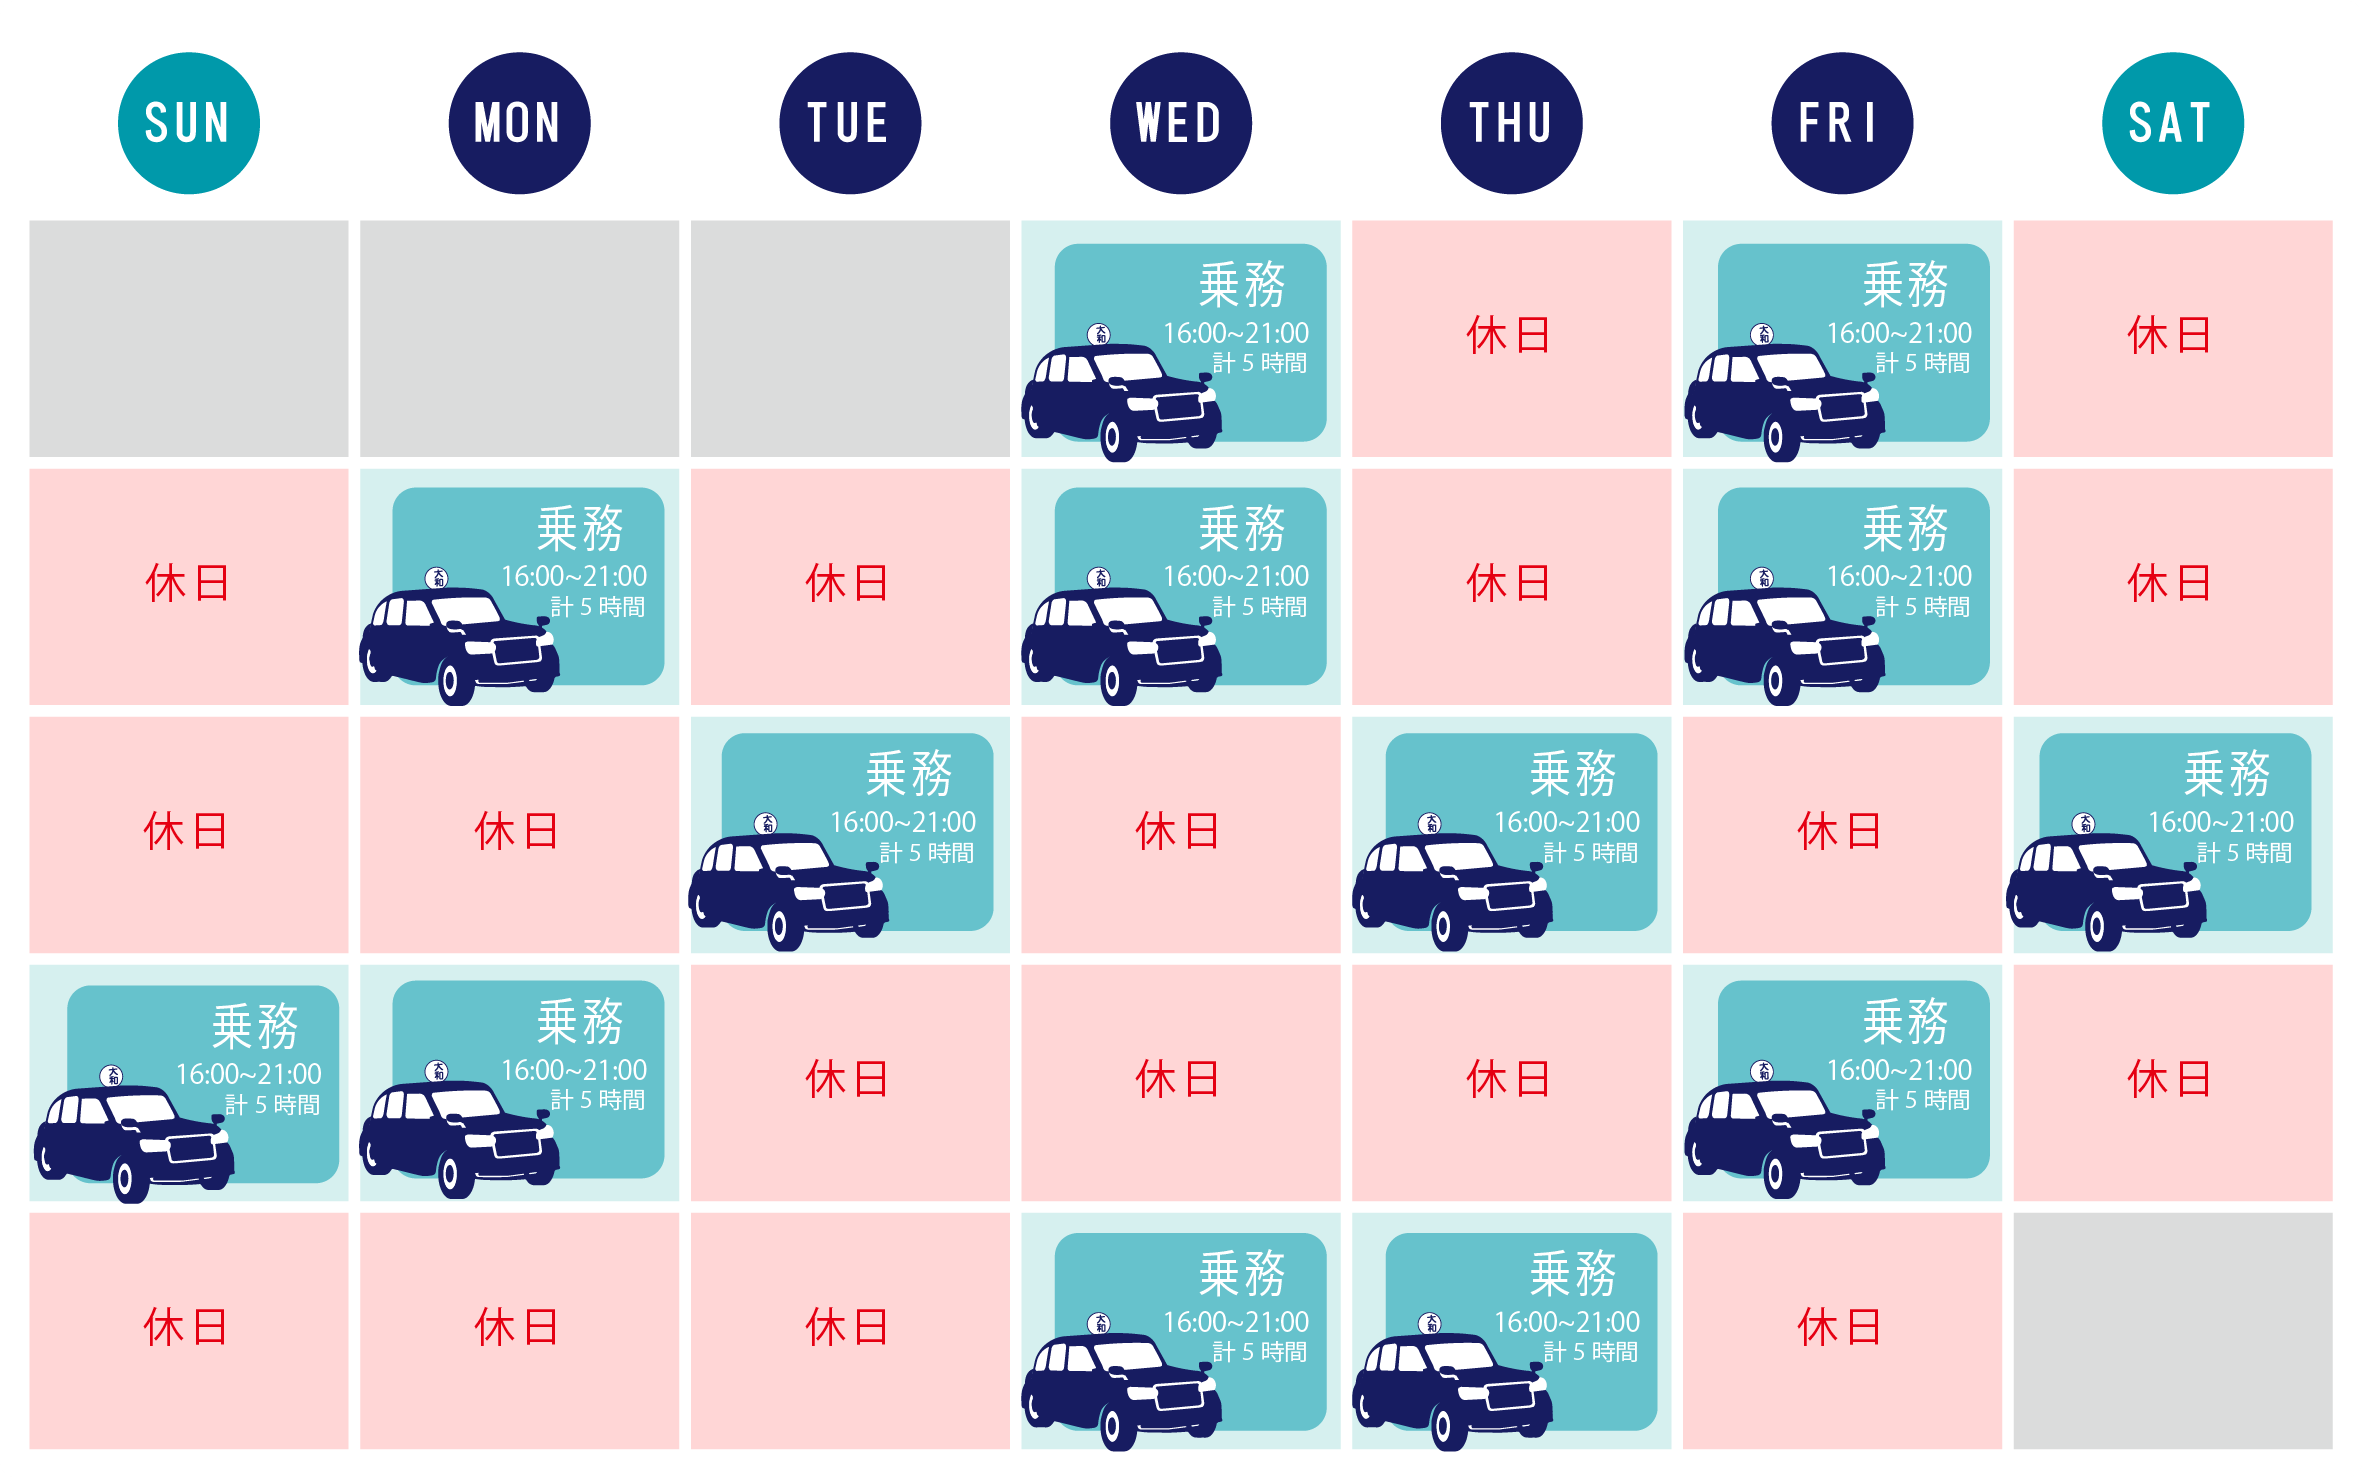 タクシー乗務員の1カ月カレンダー